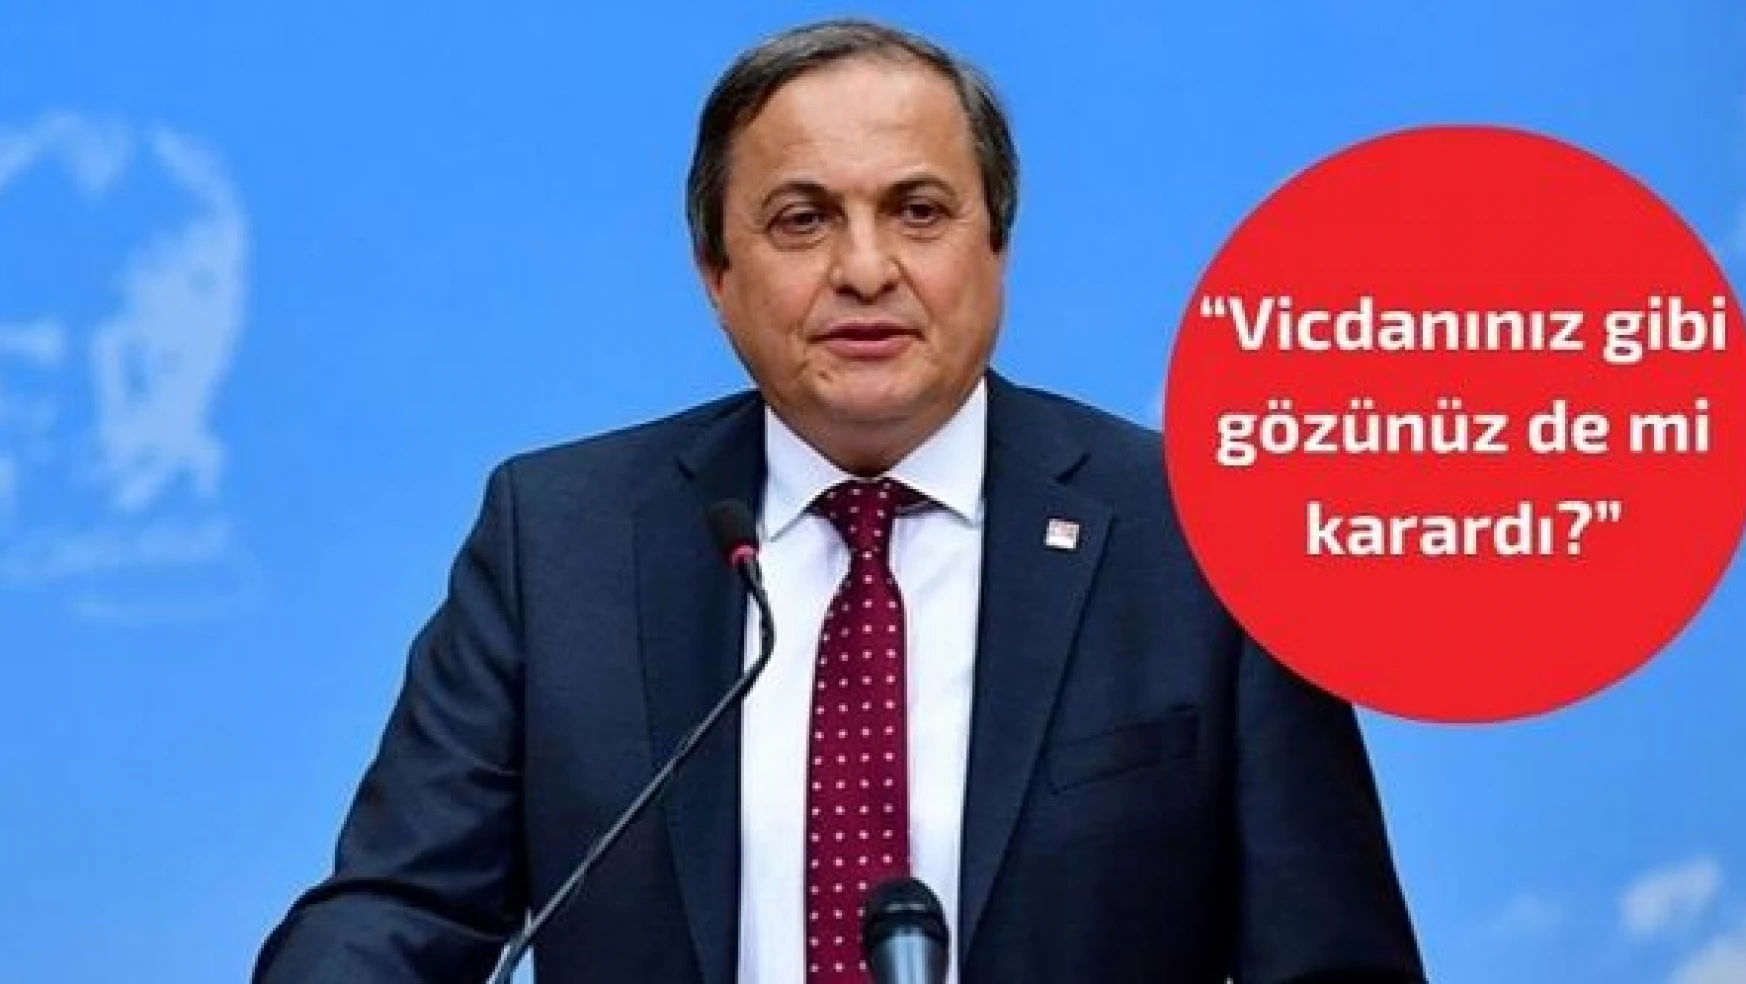 CHP Genel Başkan Yardımcısı Torun: 'Vicdanınız gibi gözünüz de mi karardı?'